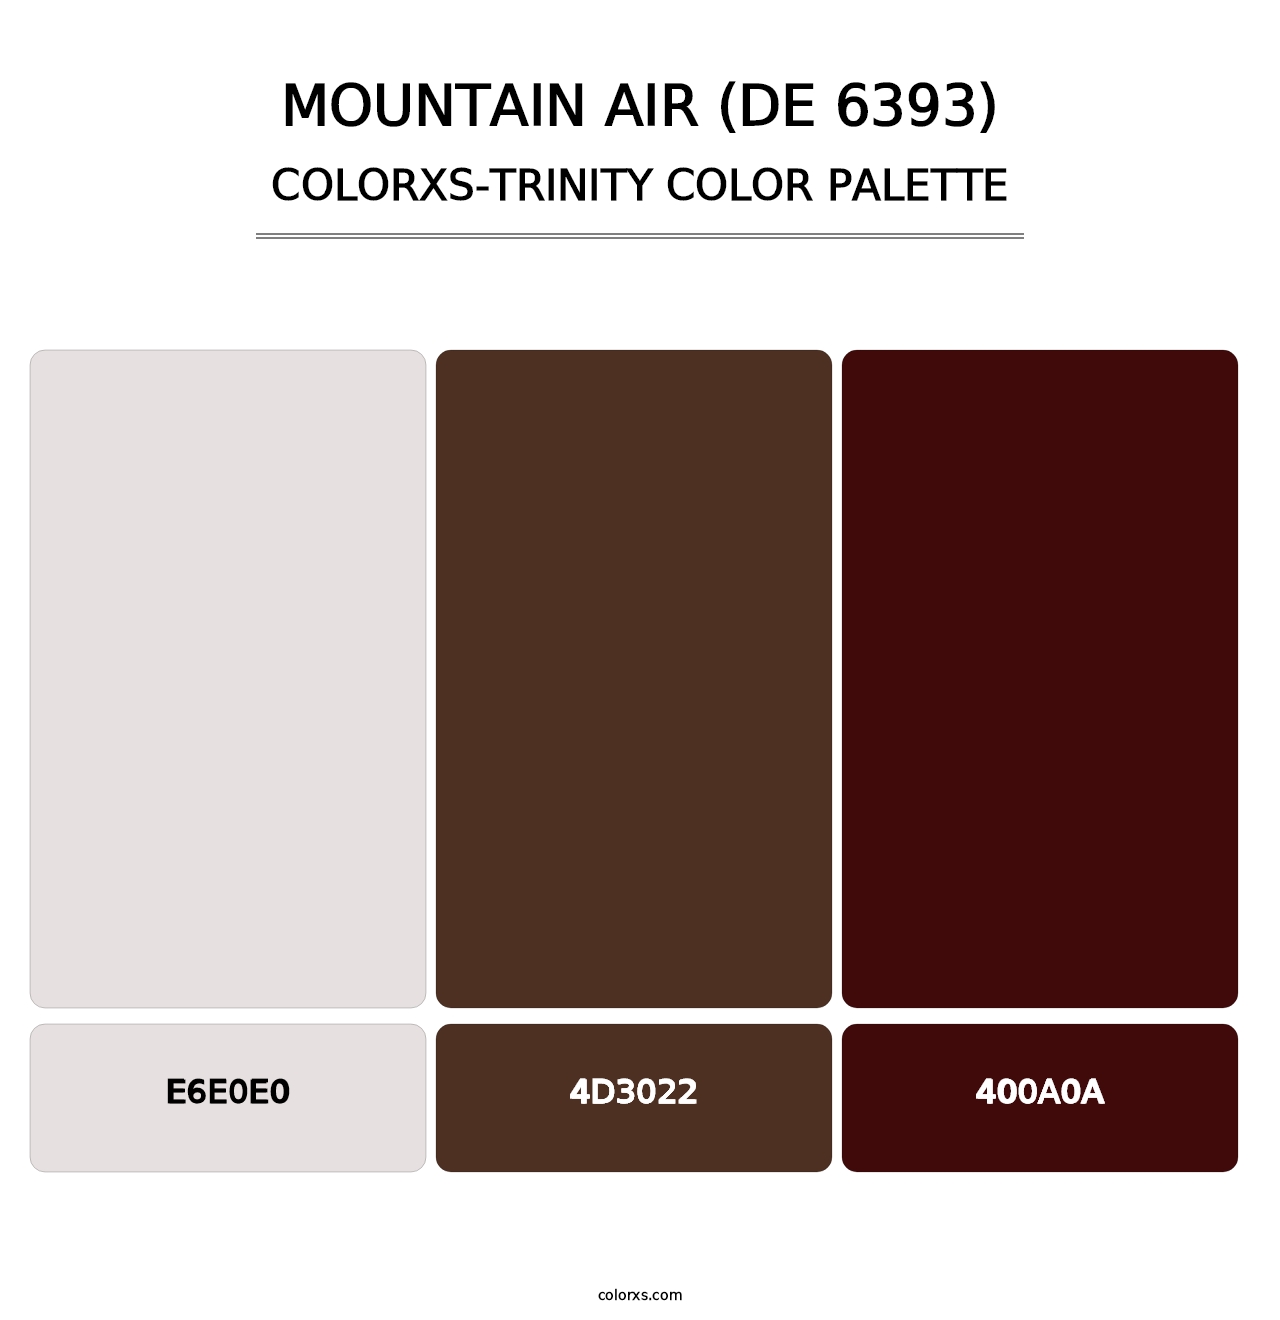 Mountain Air (DE 6393) - Colorxs Trinity Palette